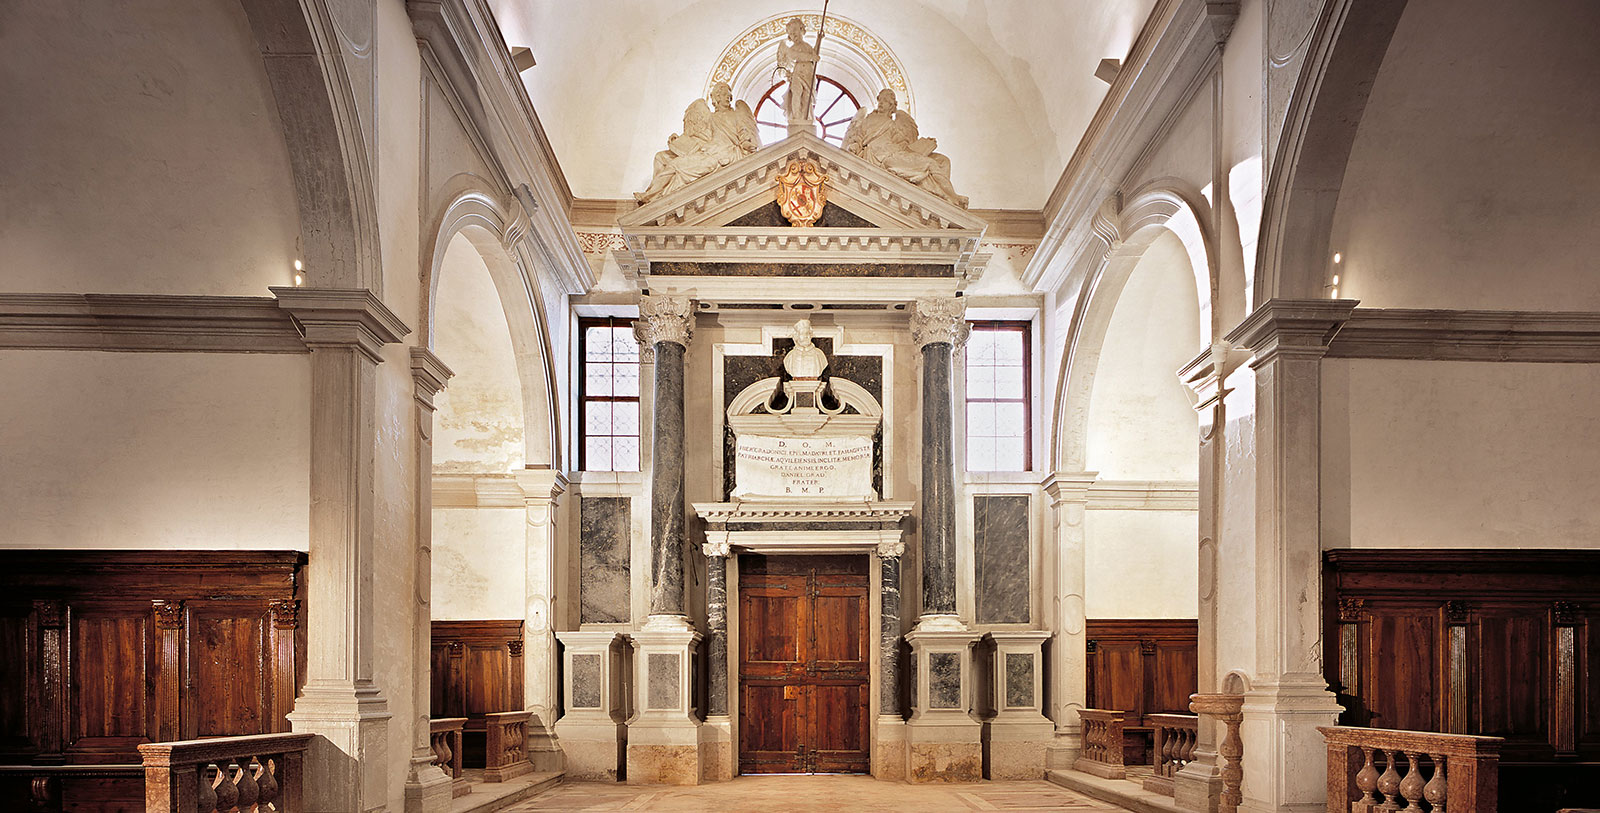 Take a day to visit the Giradini della Biennale, the Church of San Giorgio Maggiore, and the Arsenale di Venezia nearby.